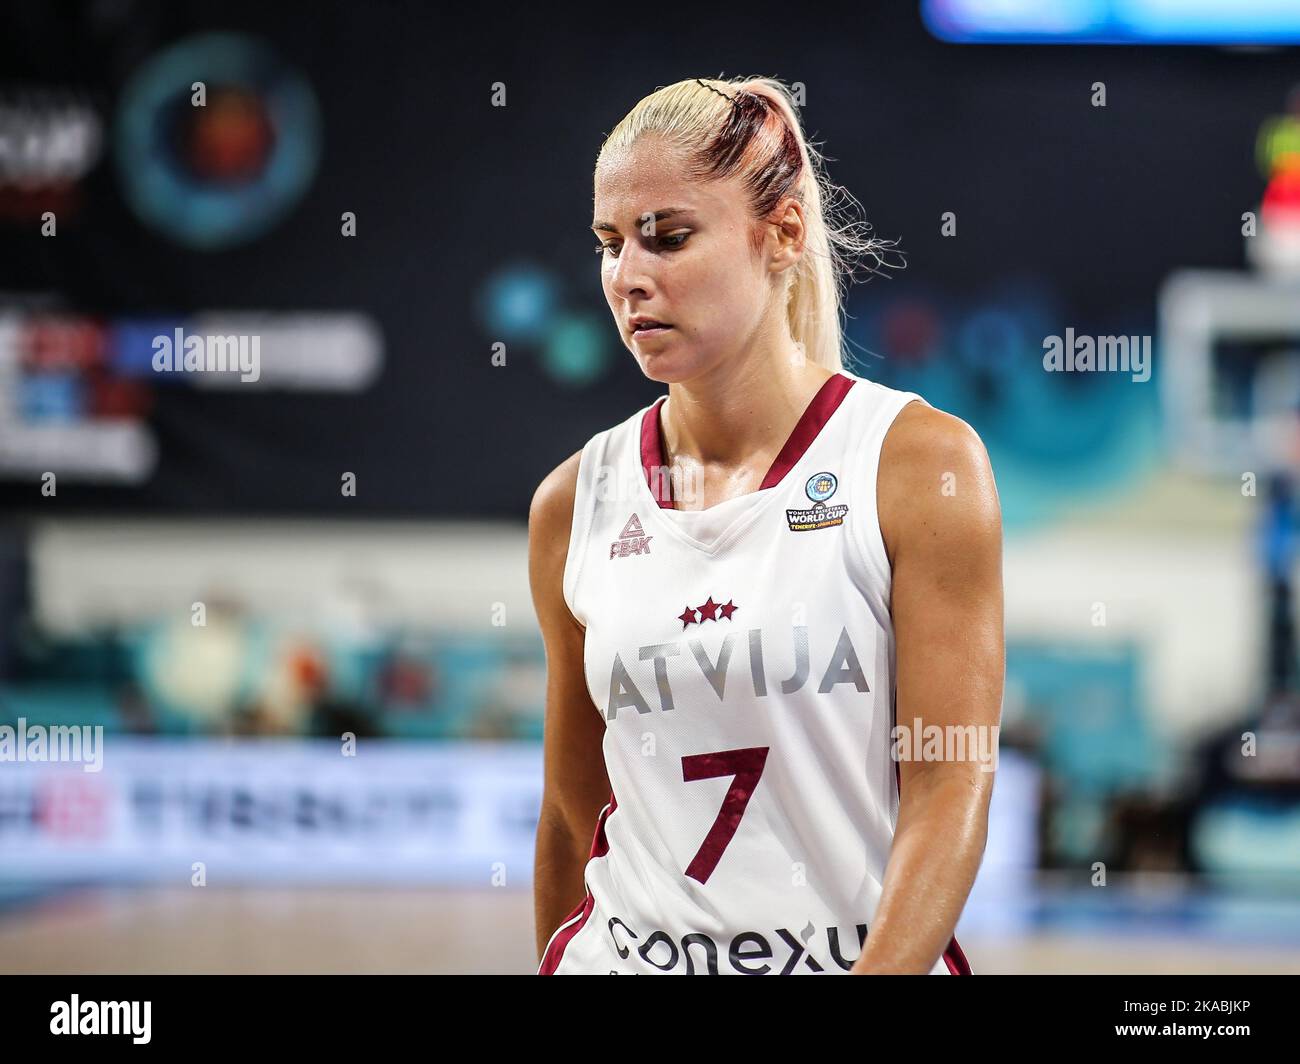 Espagne, Ténérife, 25 septembre 2018: Elina Babkina, joueuse de basket-ball féminine lettone, lors de la coupe du monde de basket-ball féminine de la FIBA Banque D'Images